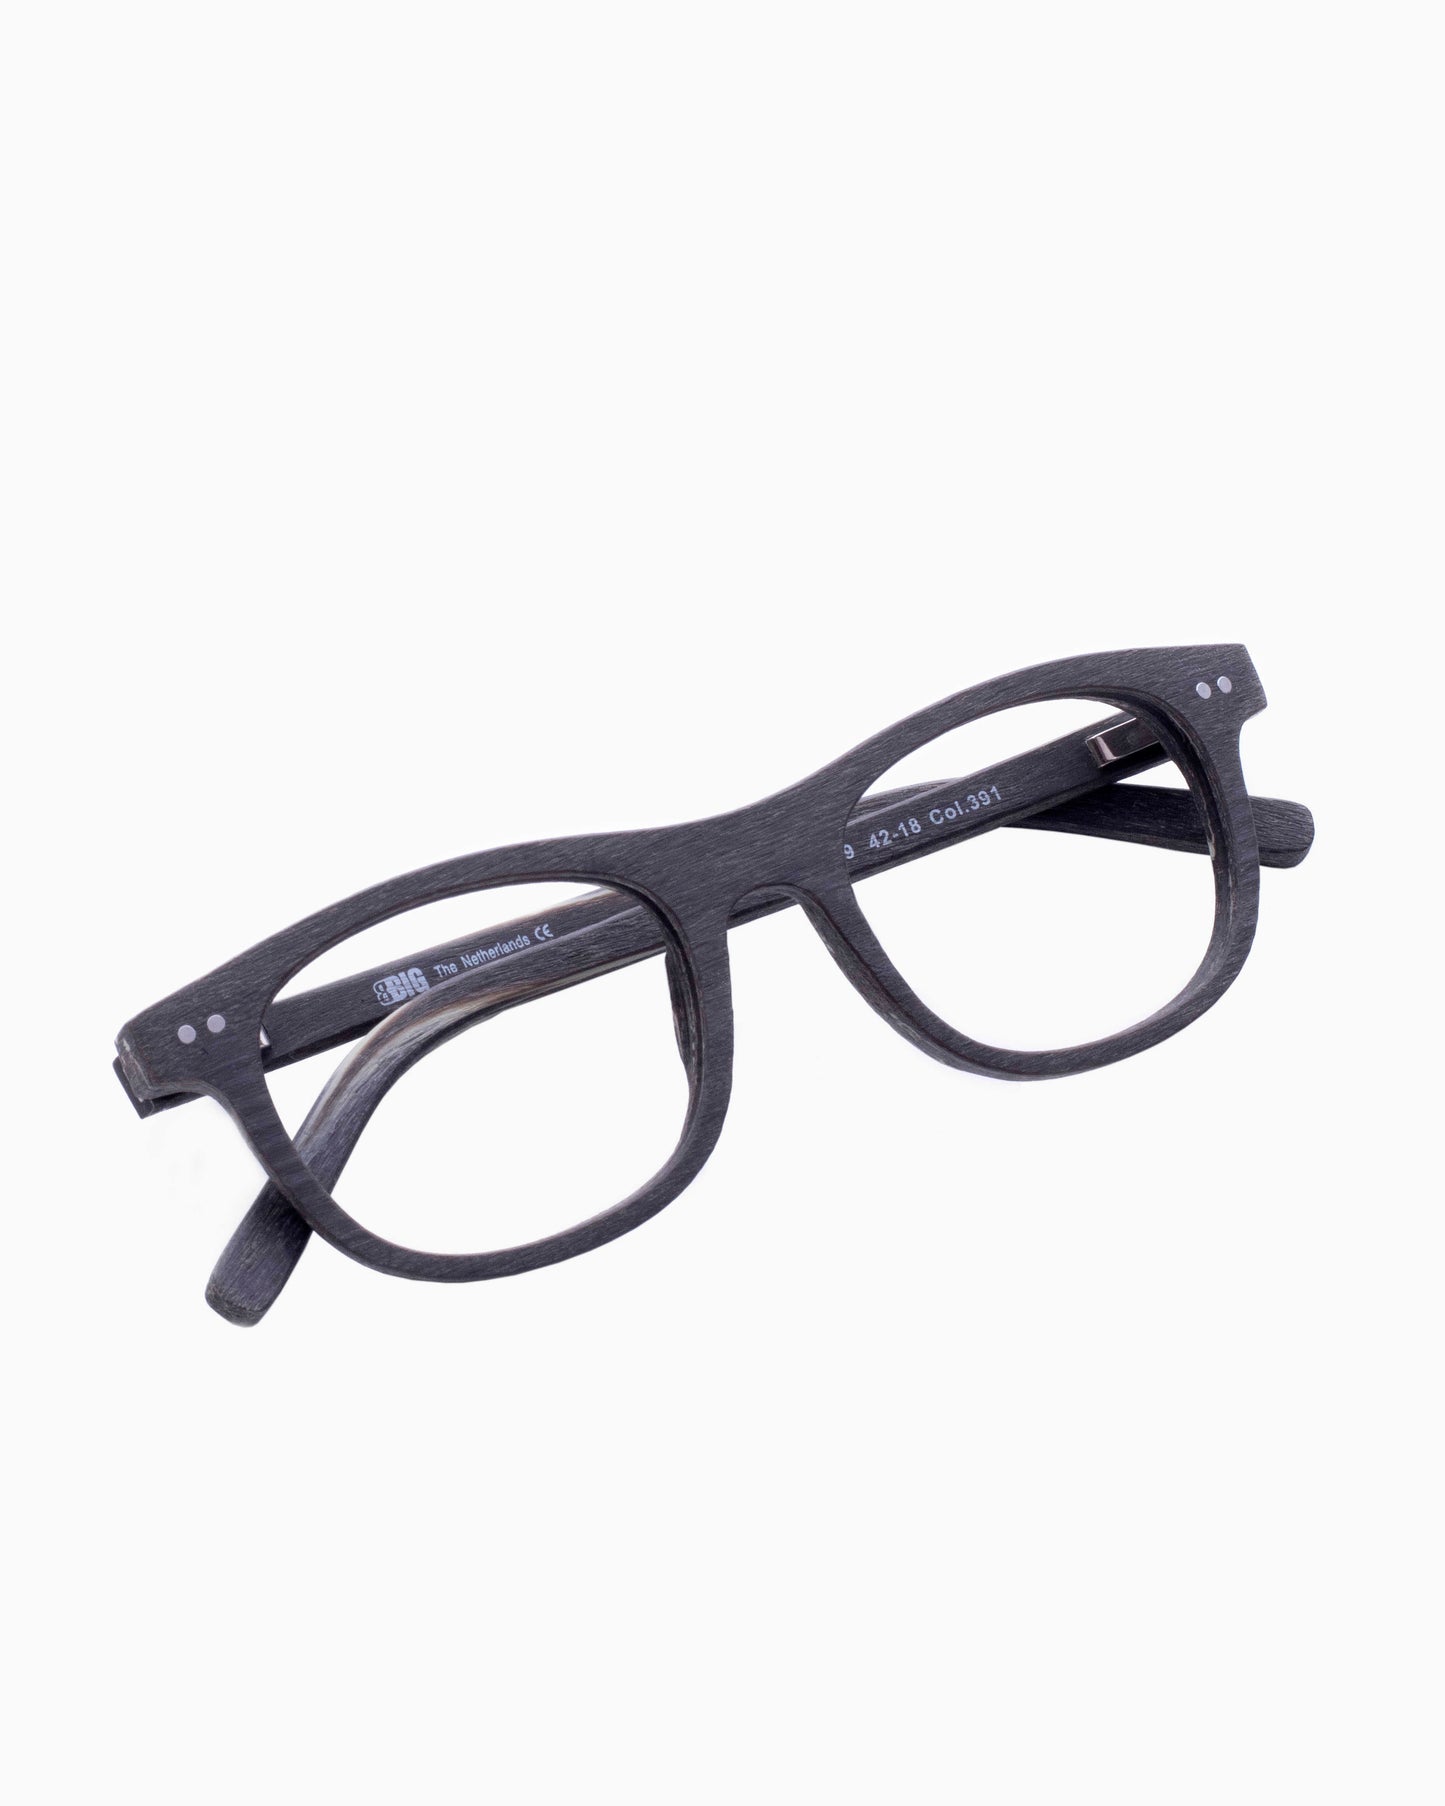 BBig - 219 - 391 | glasses bar